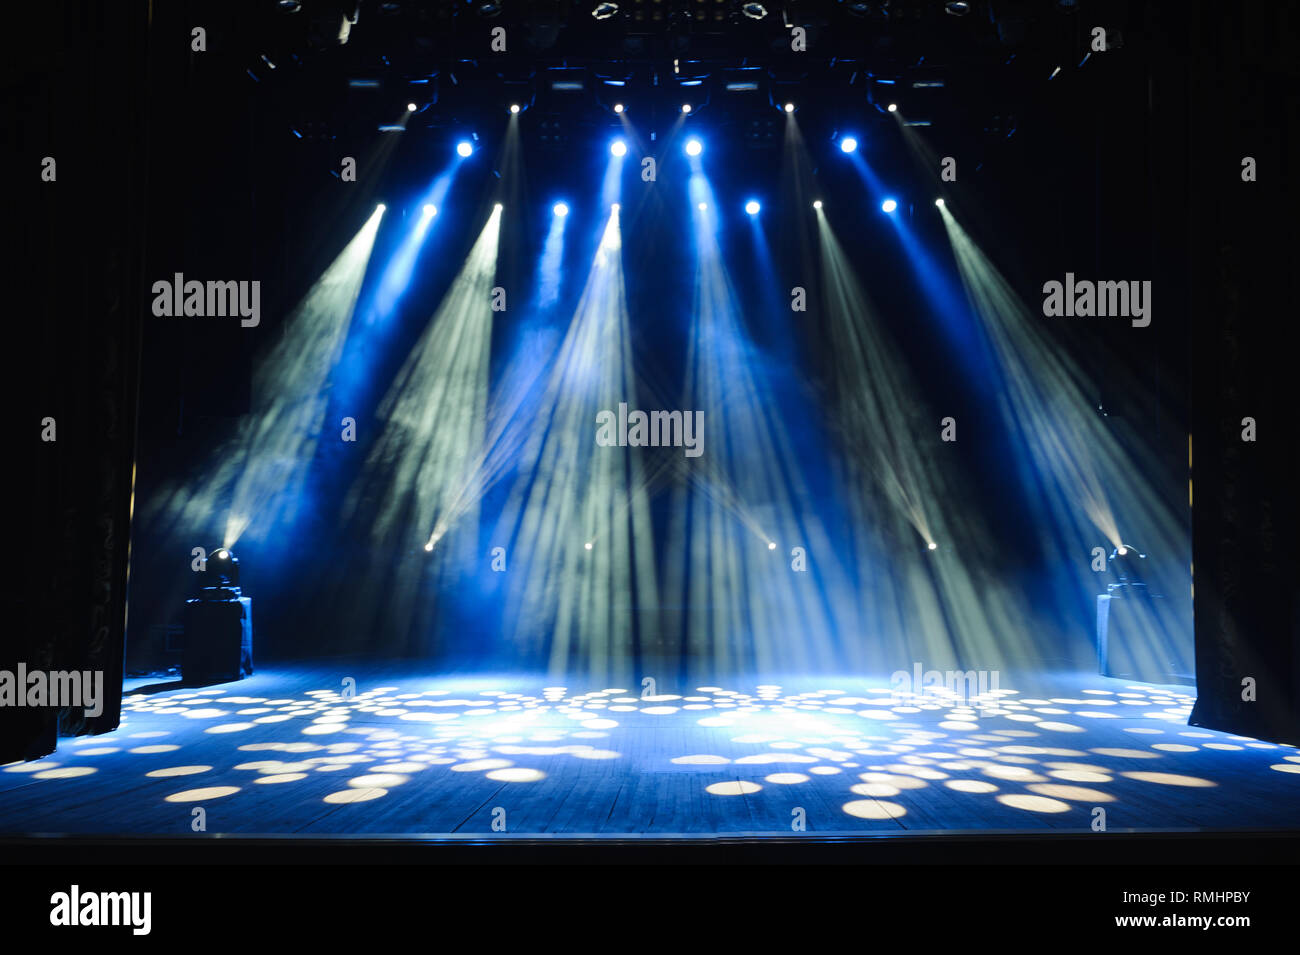 Freie Bühne mit Beleuchtung, Beleuchtung Geräte. Hintergrund  Stockfotografie - Alamy